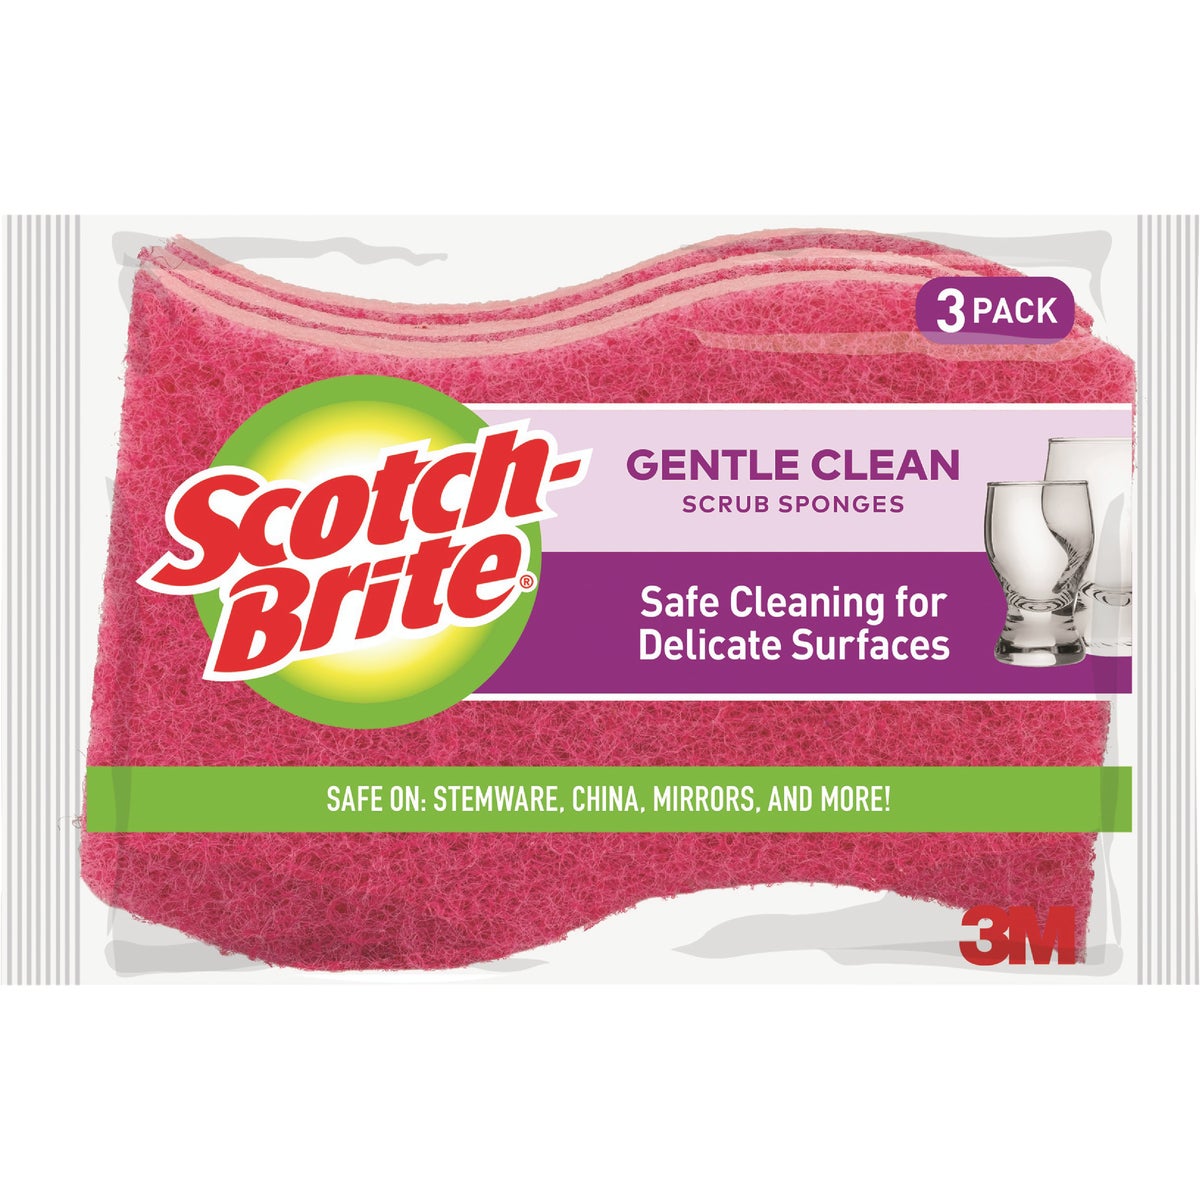 Item 606928, Use a Scotch Brite Delicate Care Scrub Sponge for your most delicate 